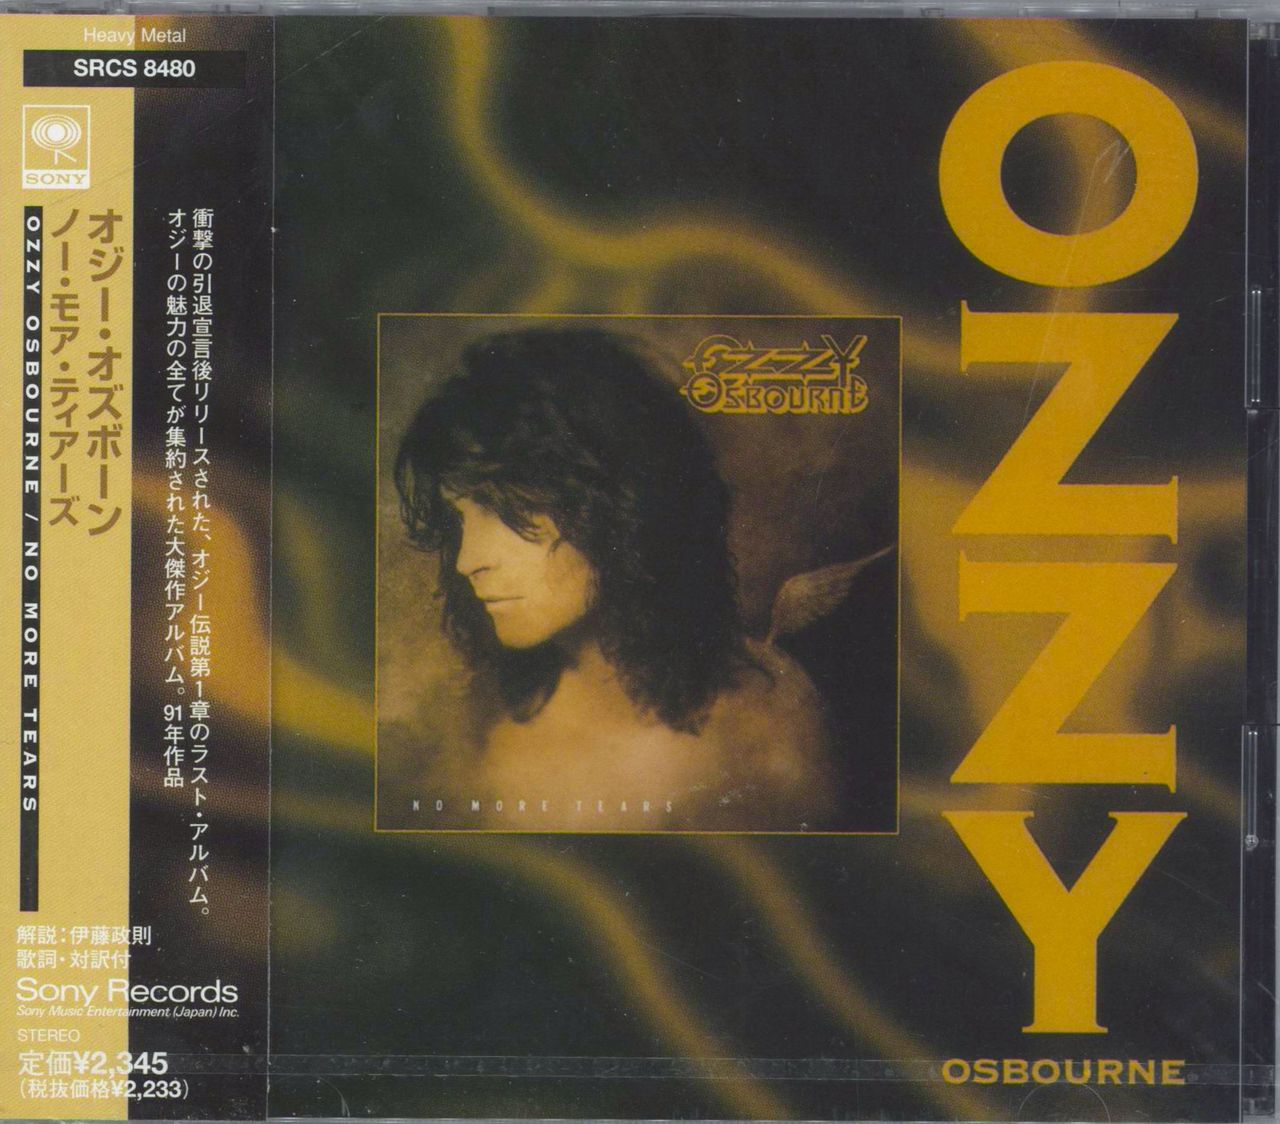 Ozzy Osbourne No More Tears Japanese Promo CD album — RareVinyl.com